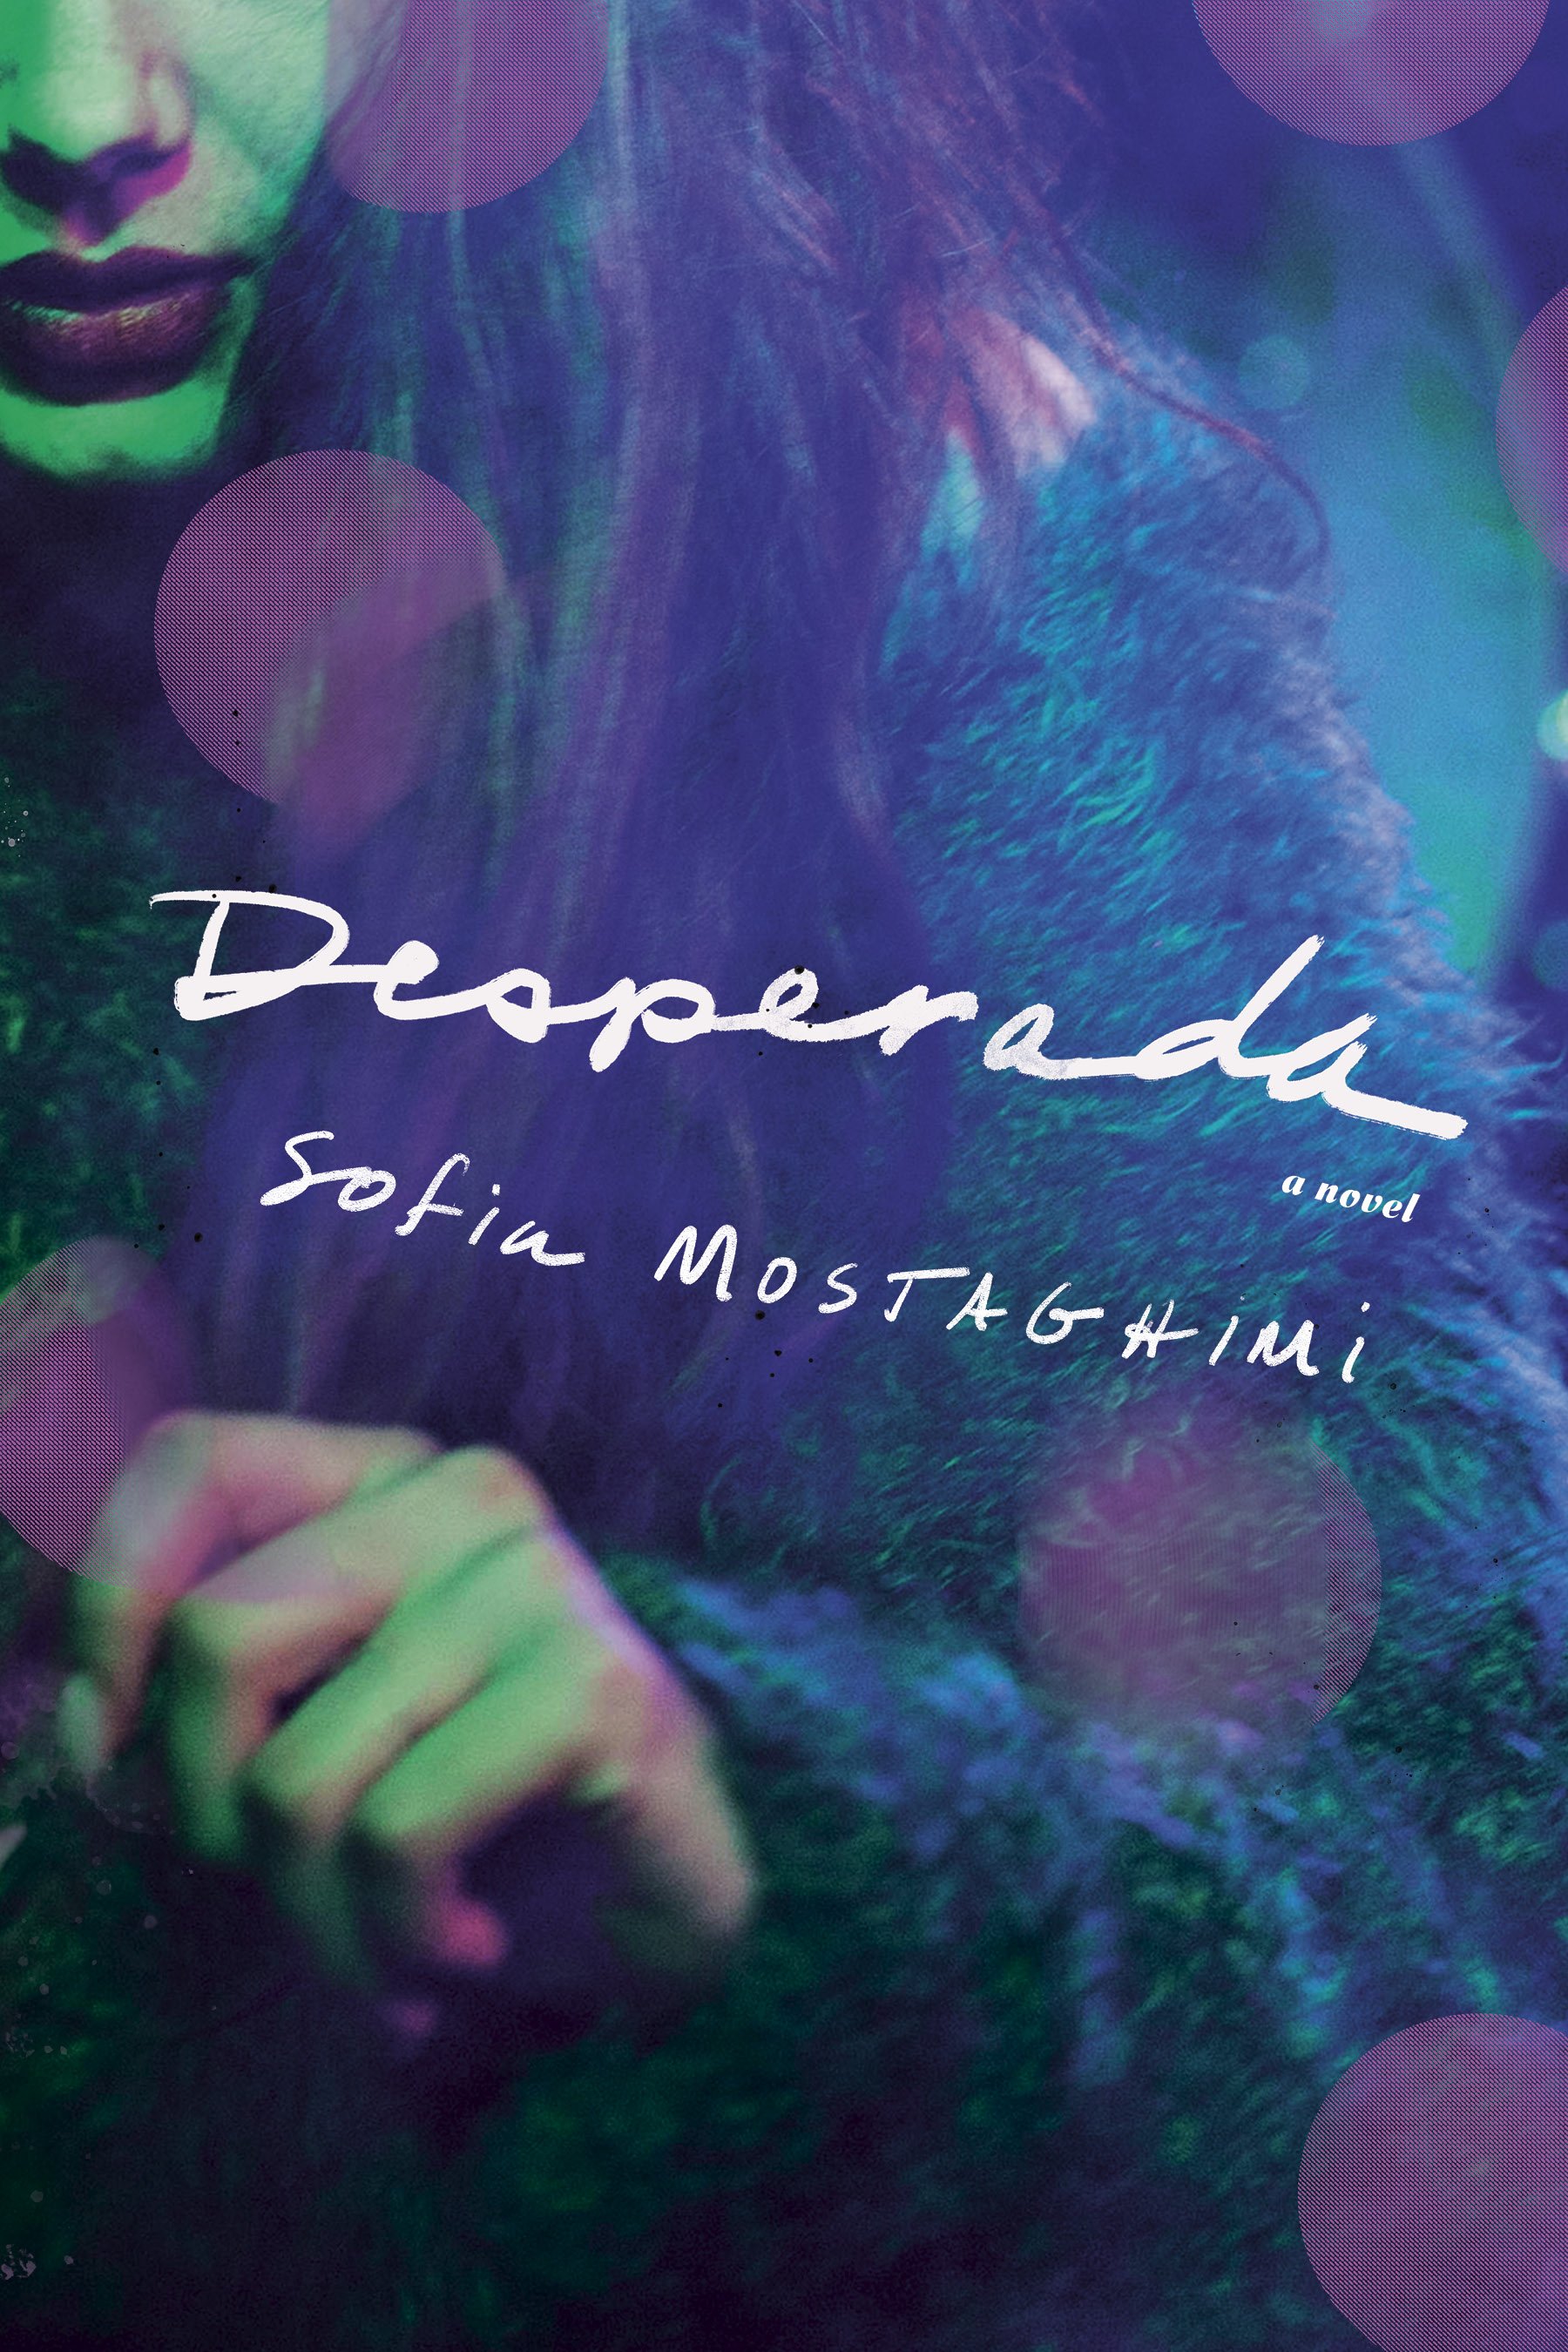 Mostaghimi, Sofia - Desperada - FINAL cover.jpg